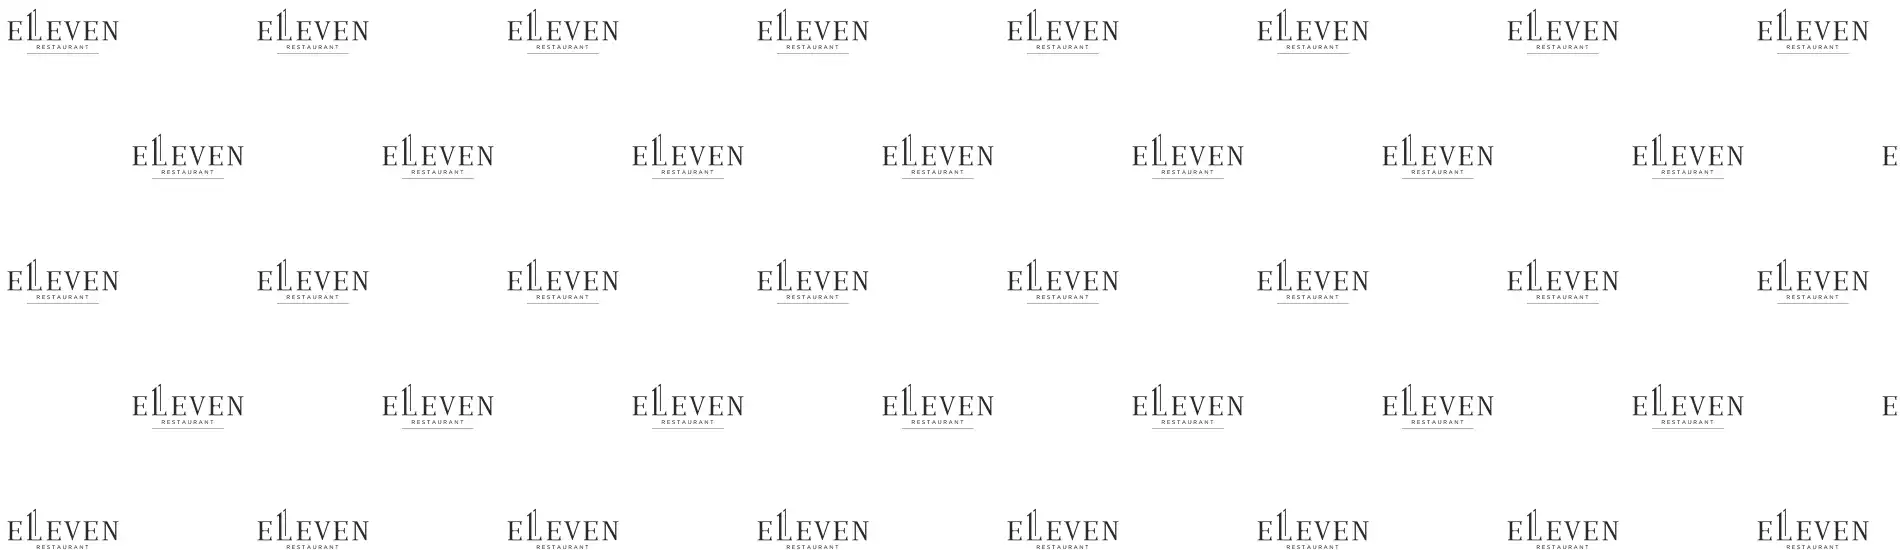 Подготовка праздничного меню для корпоративного мероприятия в ресторане «Elleven»